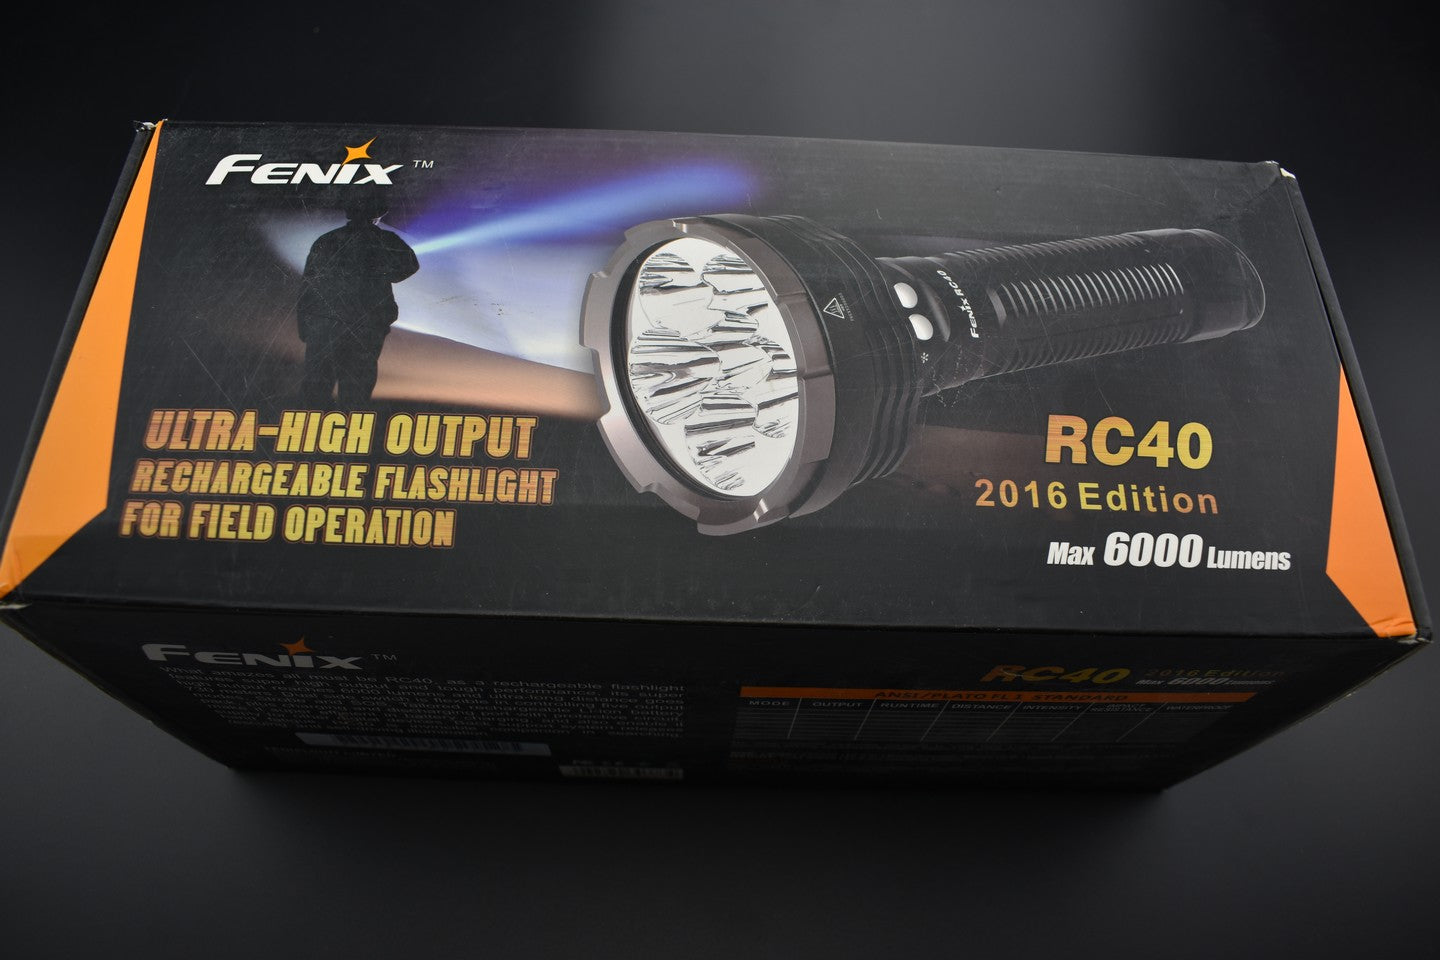 Fenix occasion - OCF105 RC40 - Revendeur Officiel Lampes FENIX depuis 2008 | Votre Boutique en ligne FENIX®